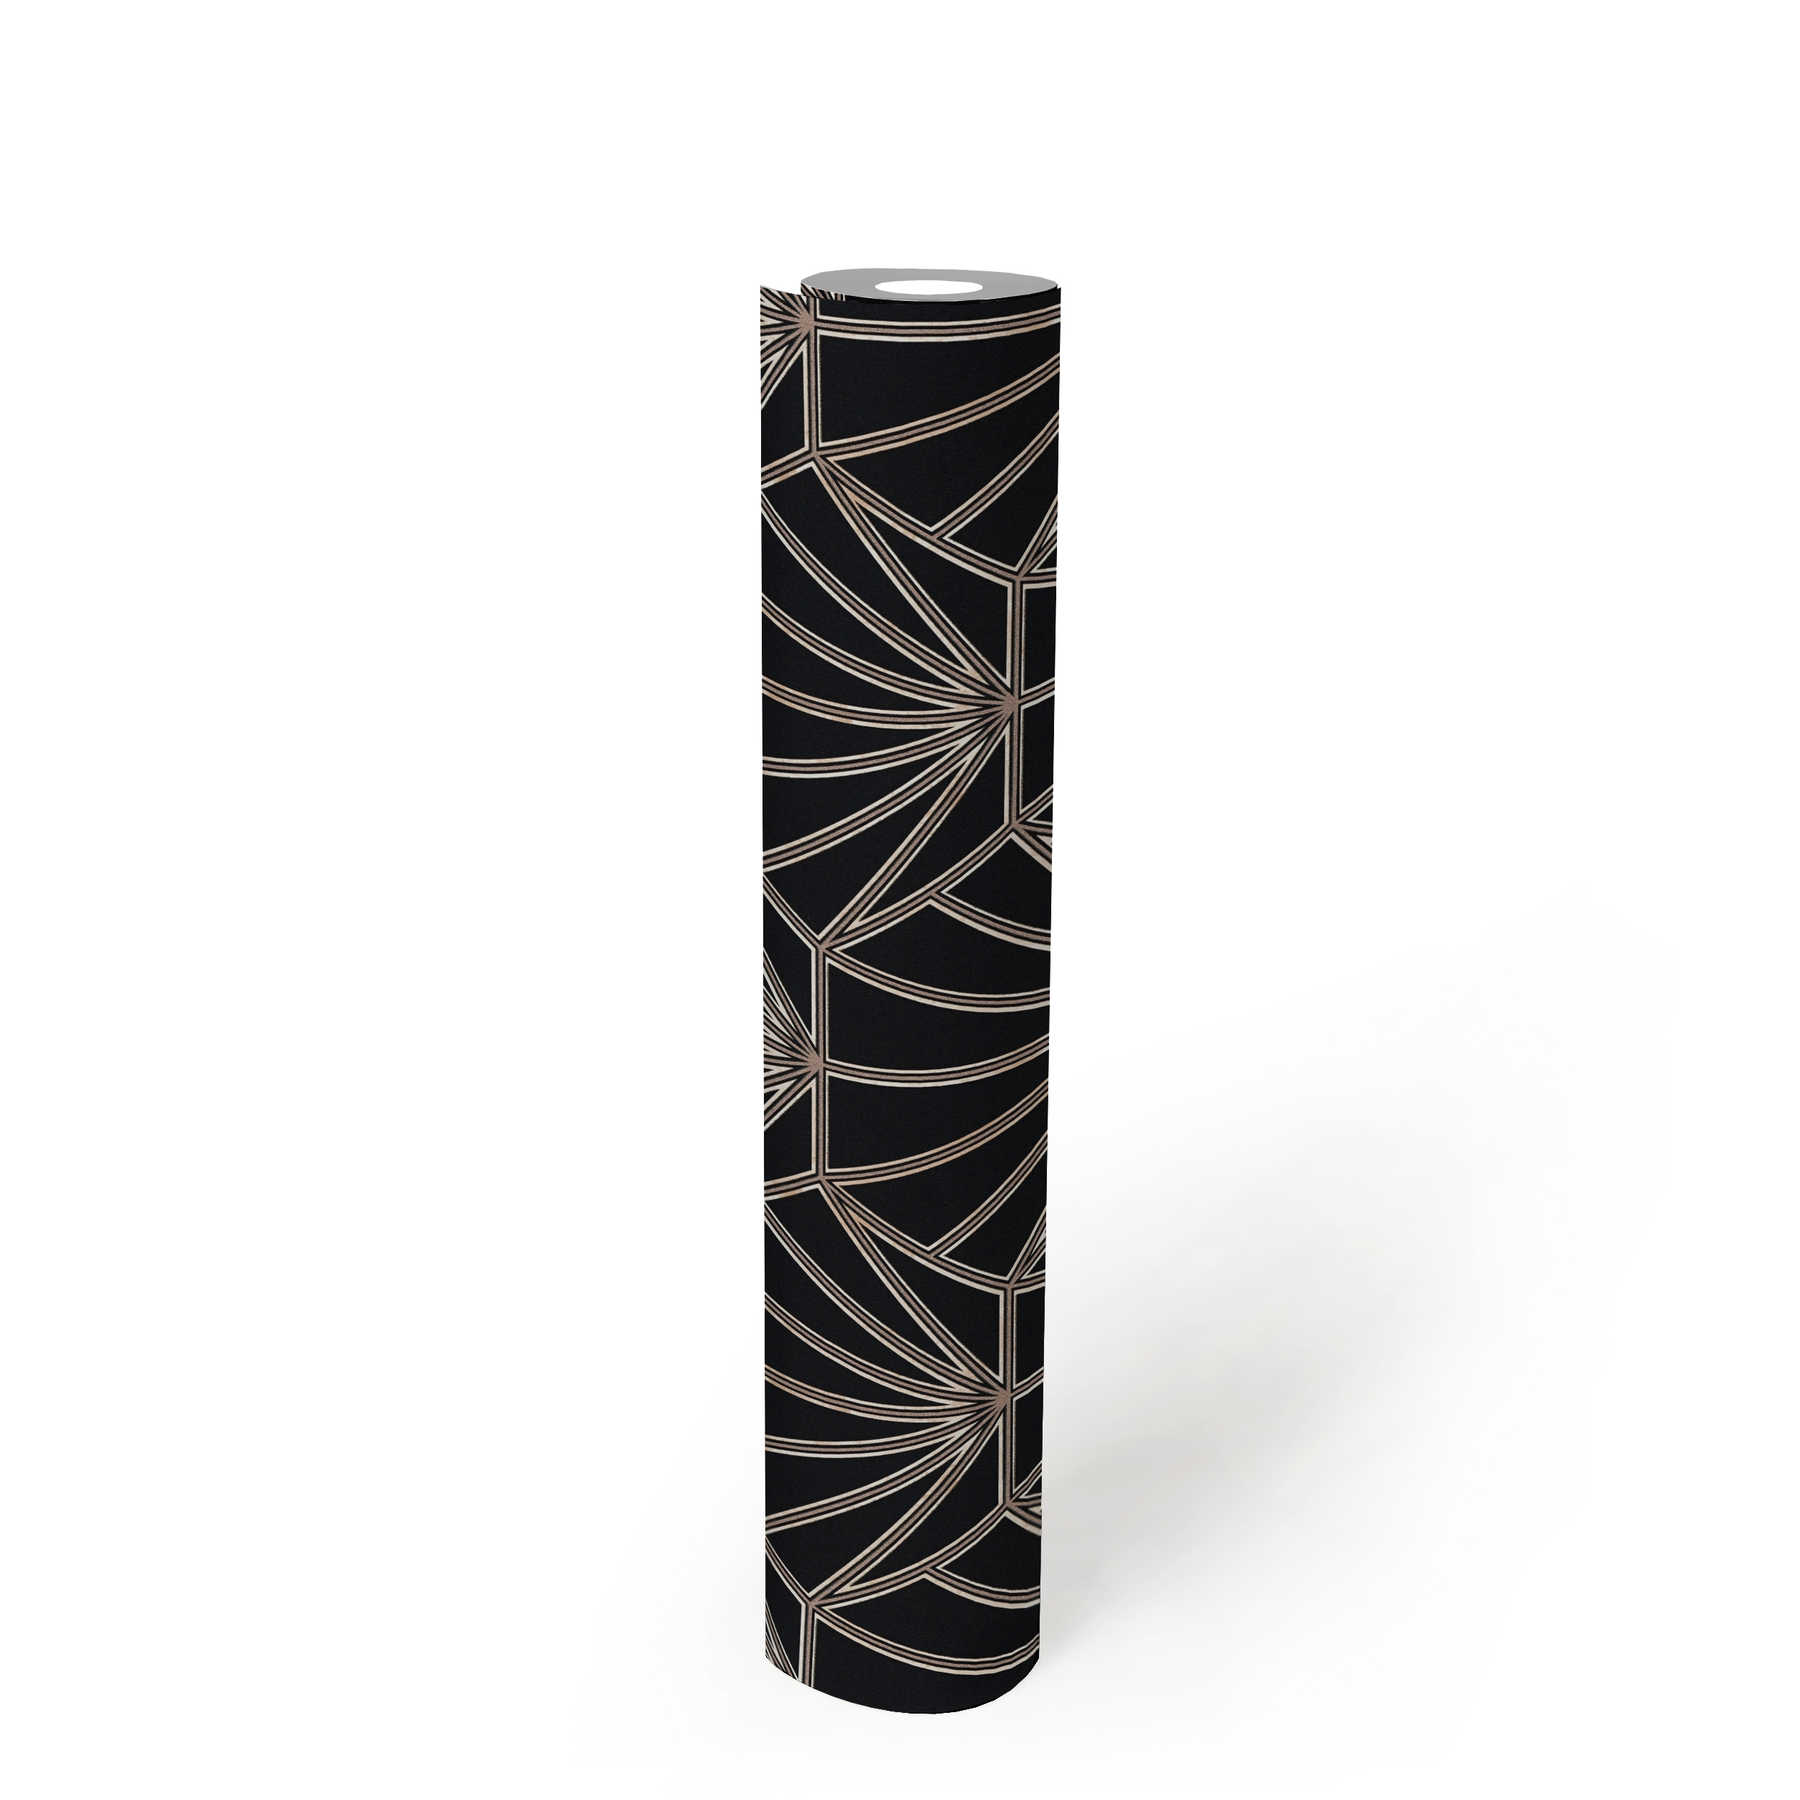             Tapete Art Déco Stil Retro Look & Linien Design – Schwarz, Bronze, Weiß
        